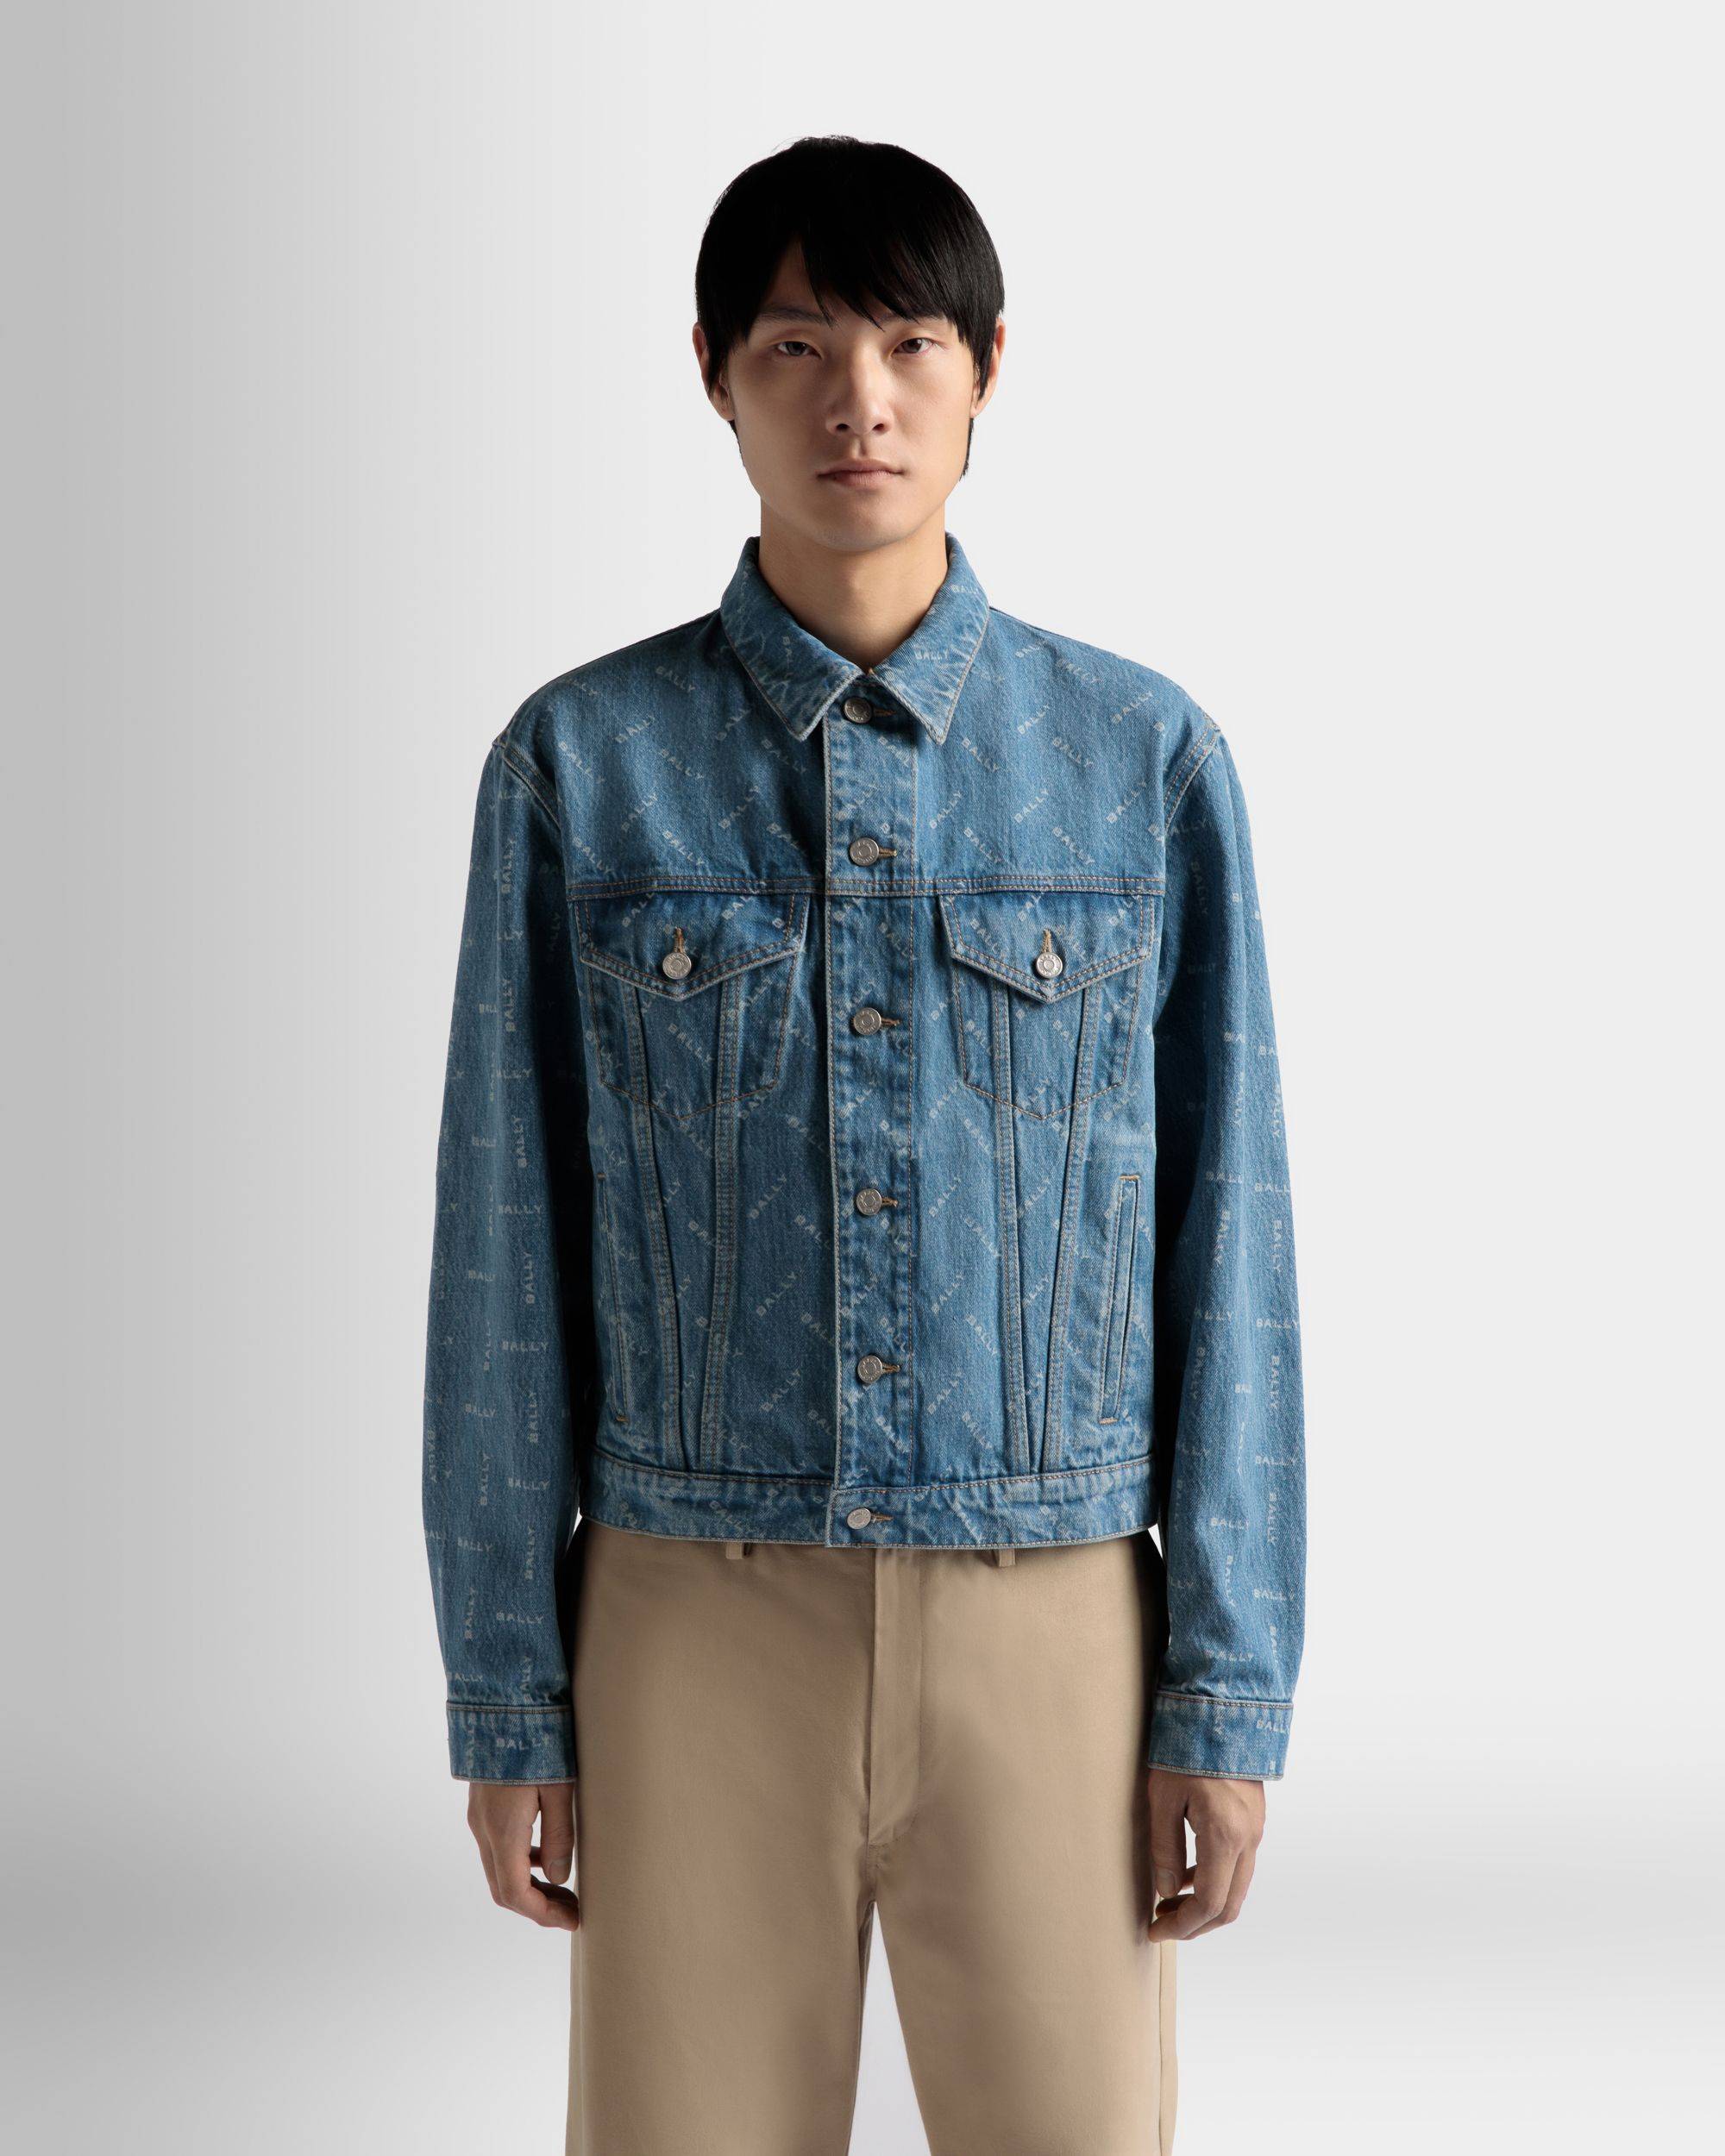 Herren-Jeansjacke aus hellblauer Baumwolle | Bally | Model getragen Nahaufnahme